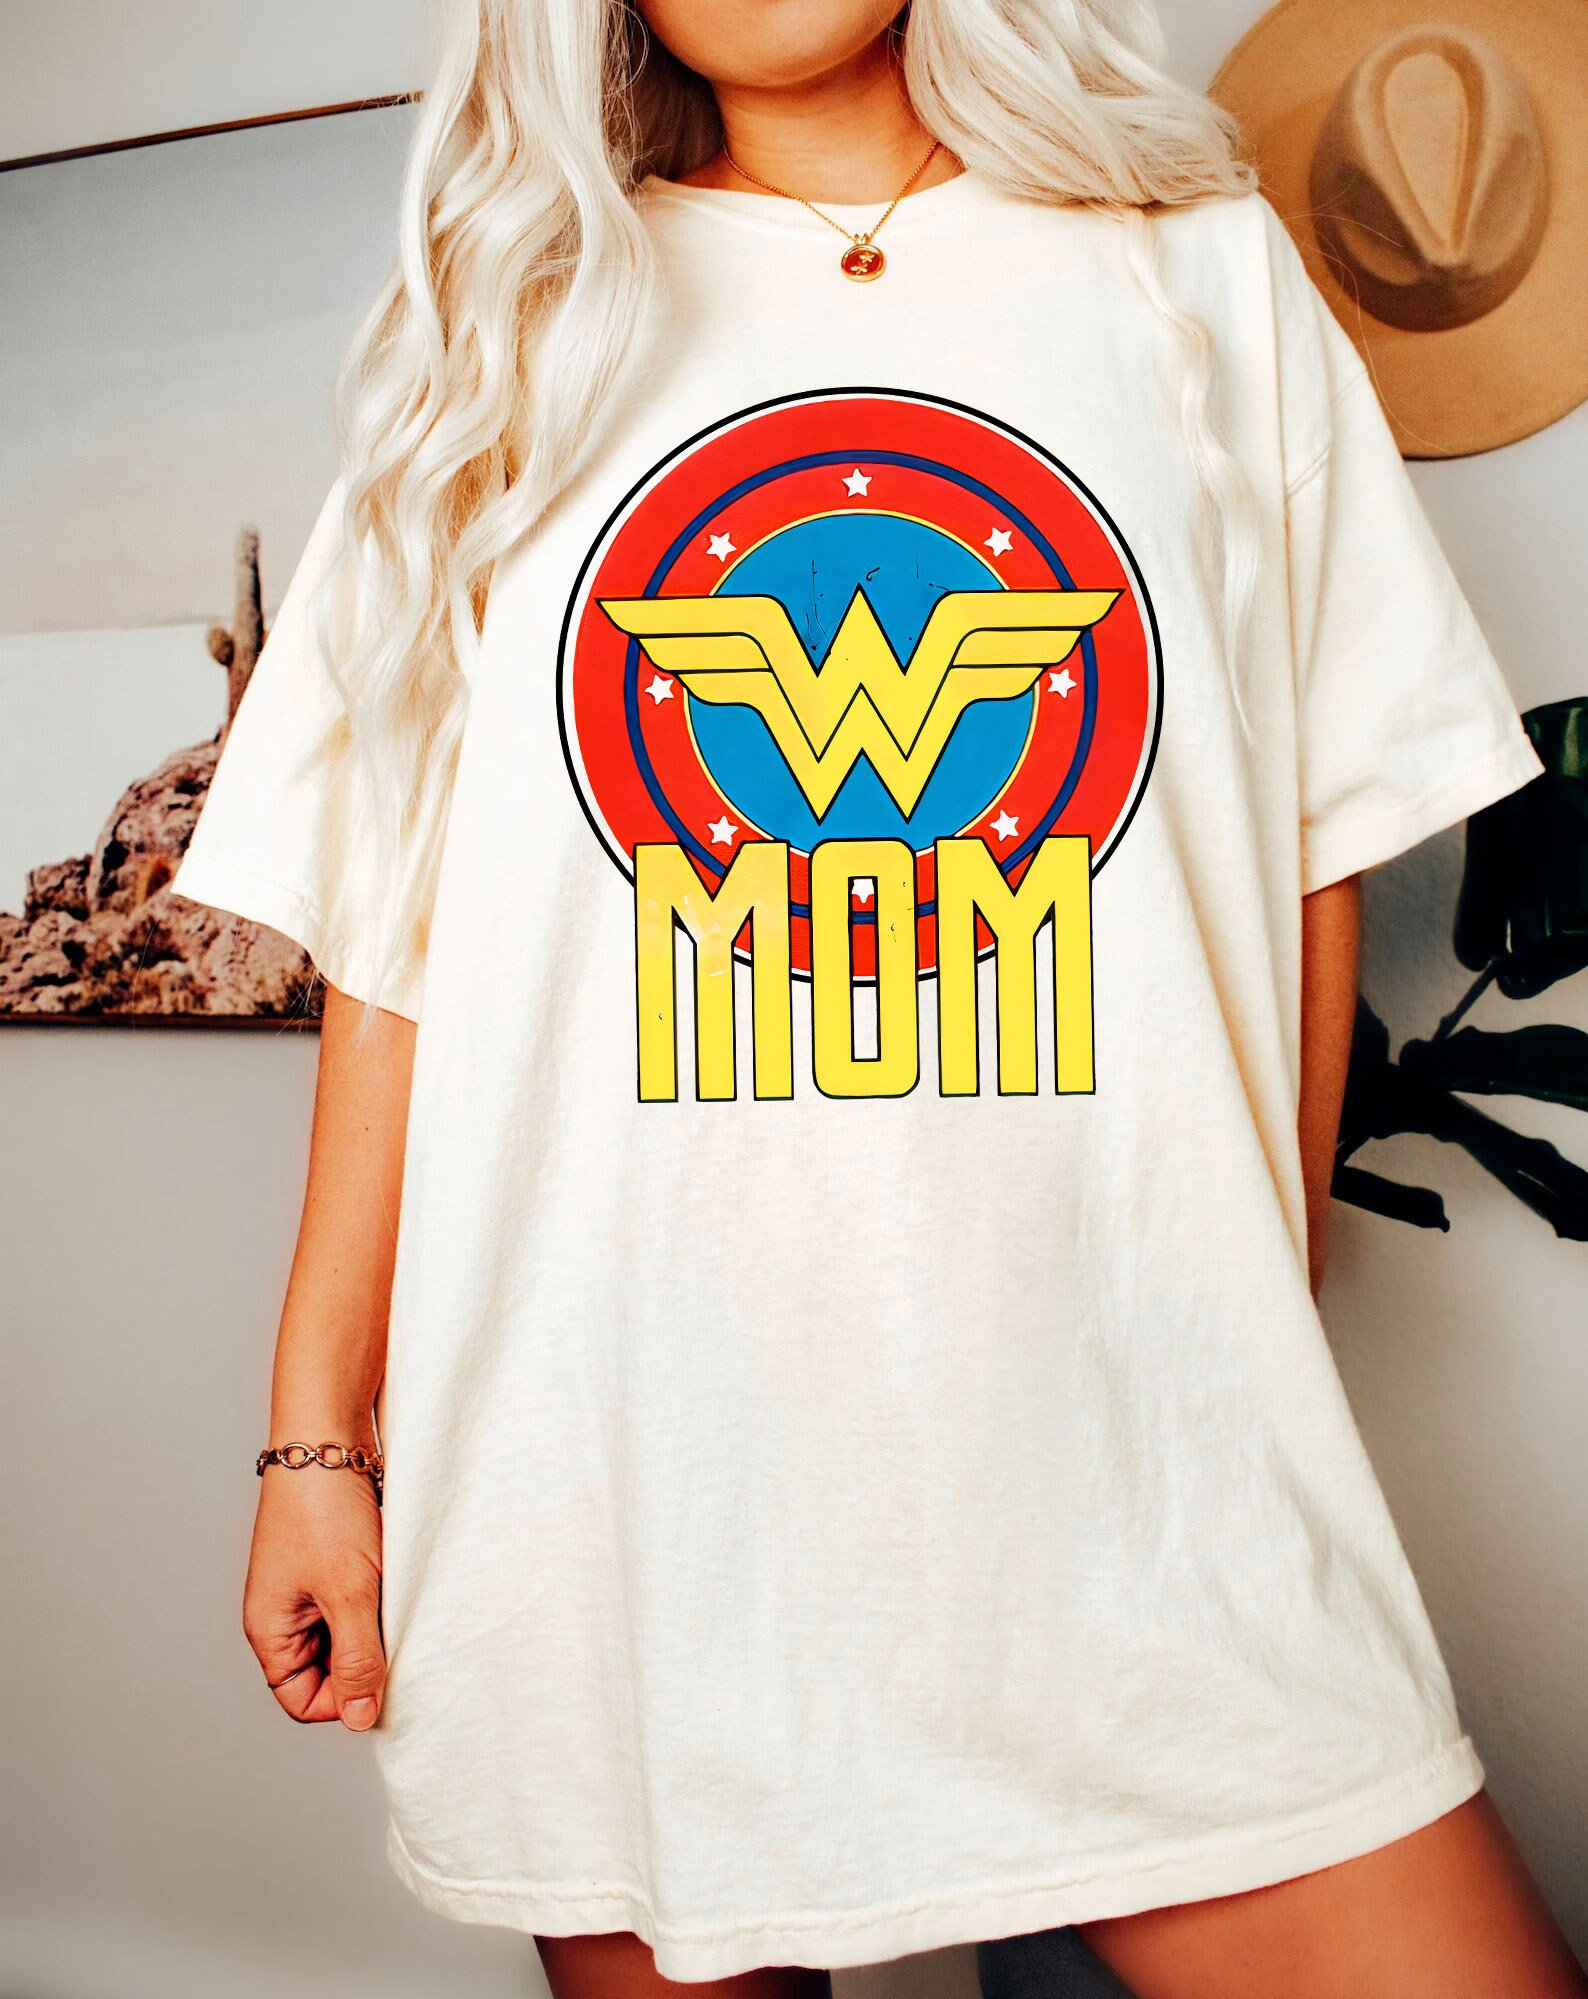 Super Mom Shirt-mom shirt,mom sweatshirt,mom gift,birthday gift for mom,gift for mom birthday,super mom gift,super mom sweatshirt,mom tshirt